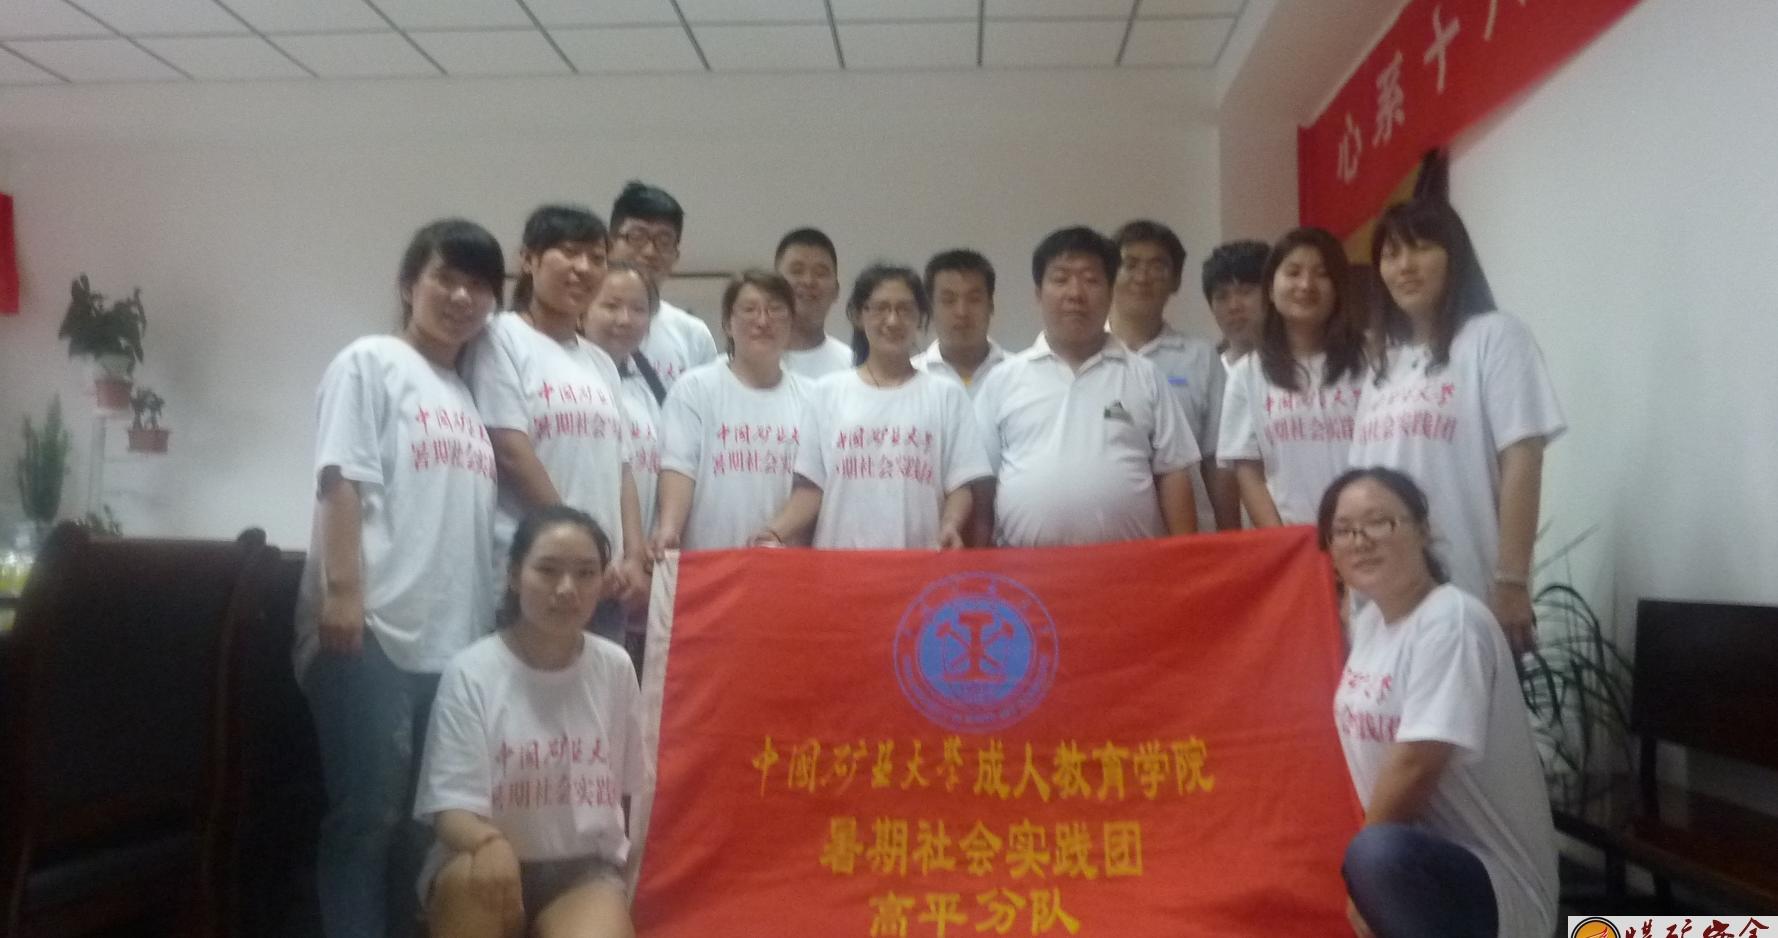 中國礦業大學暑期社會實踐高平團隊與所在實踐活動單位蘇隊長留影